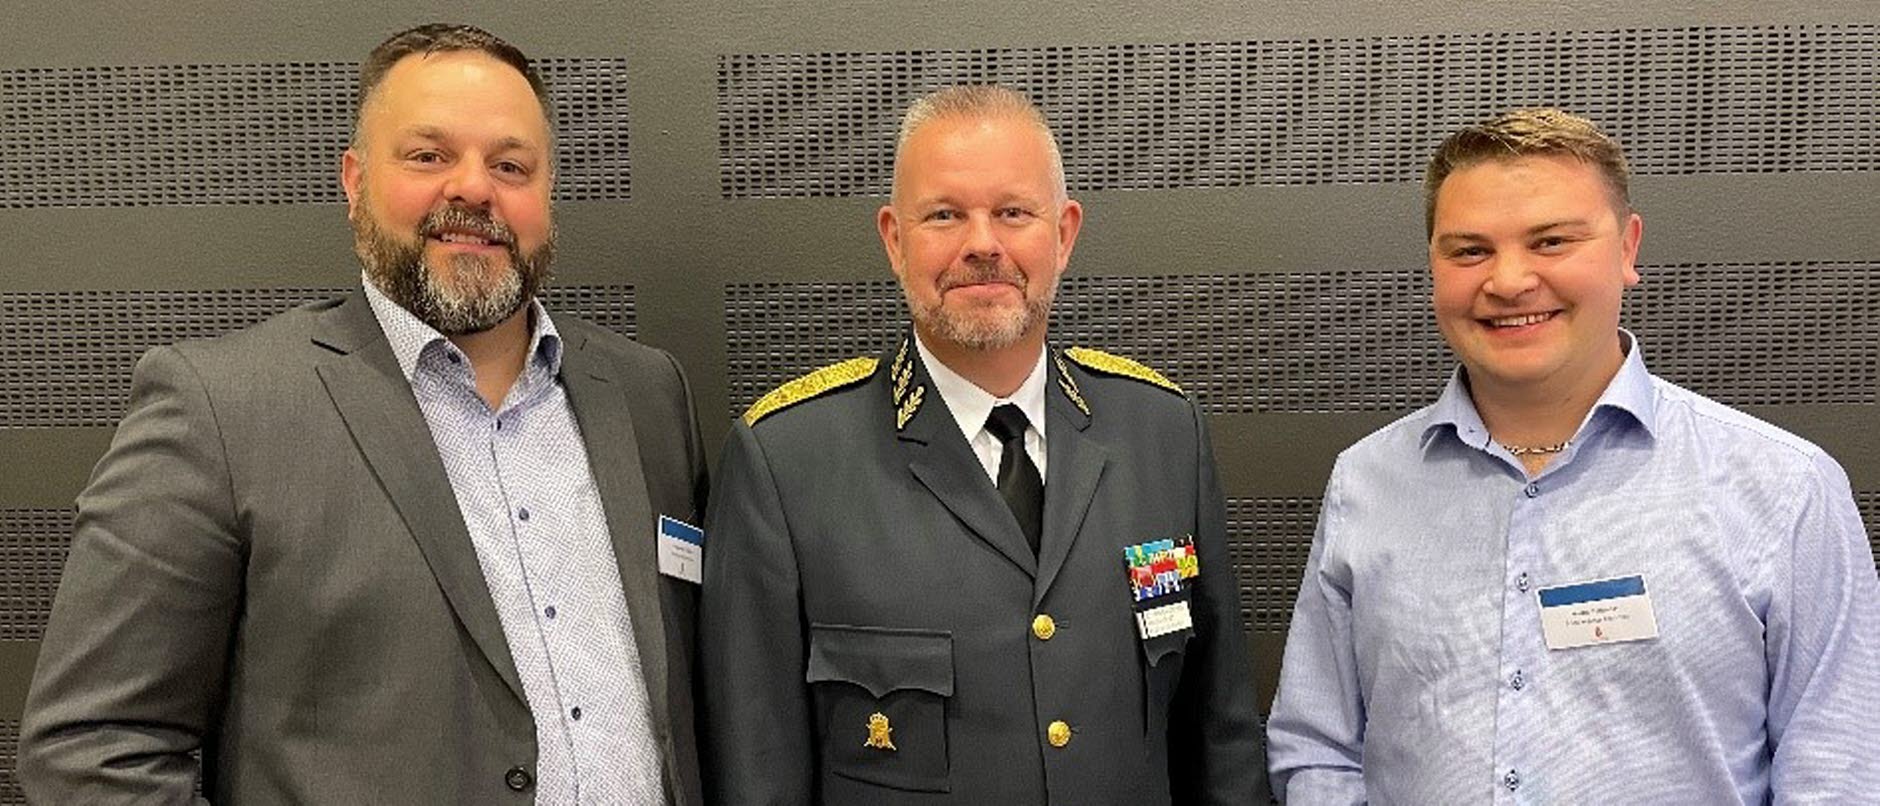 Från vänster: Alexander Klanfar (säkerhetssamordnare), Stefan Sandborg (rikshemvärnschef) och Martin Sjölander (kommunstyrelseordförande).